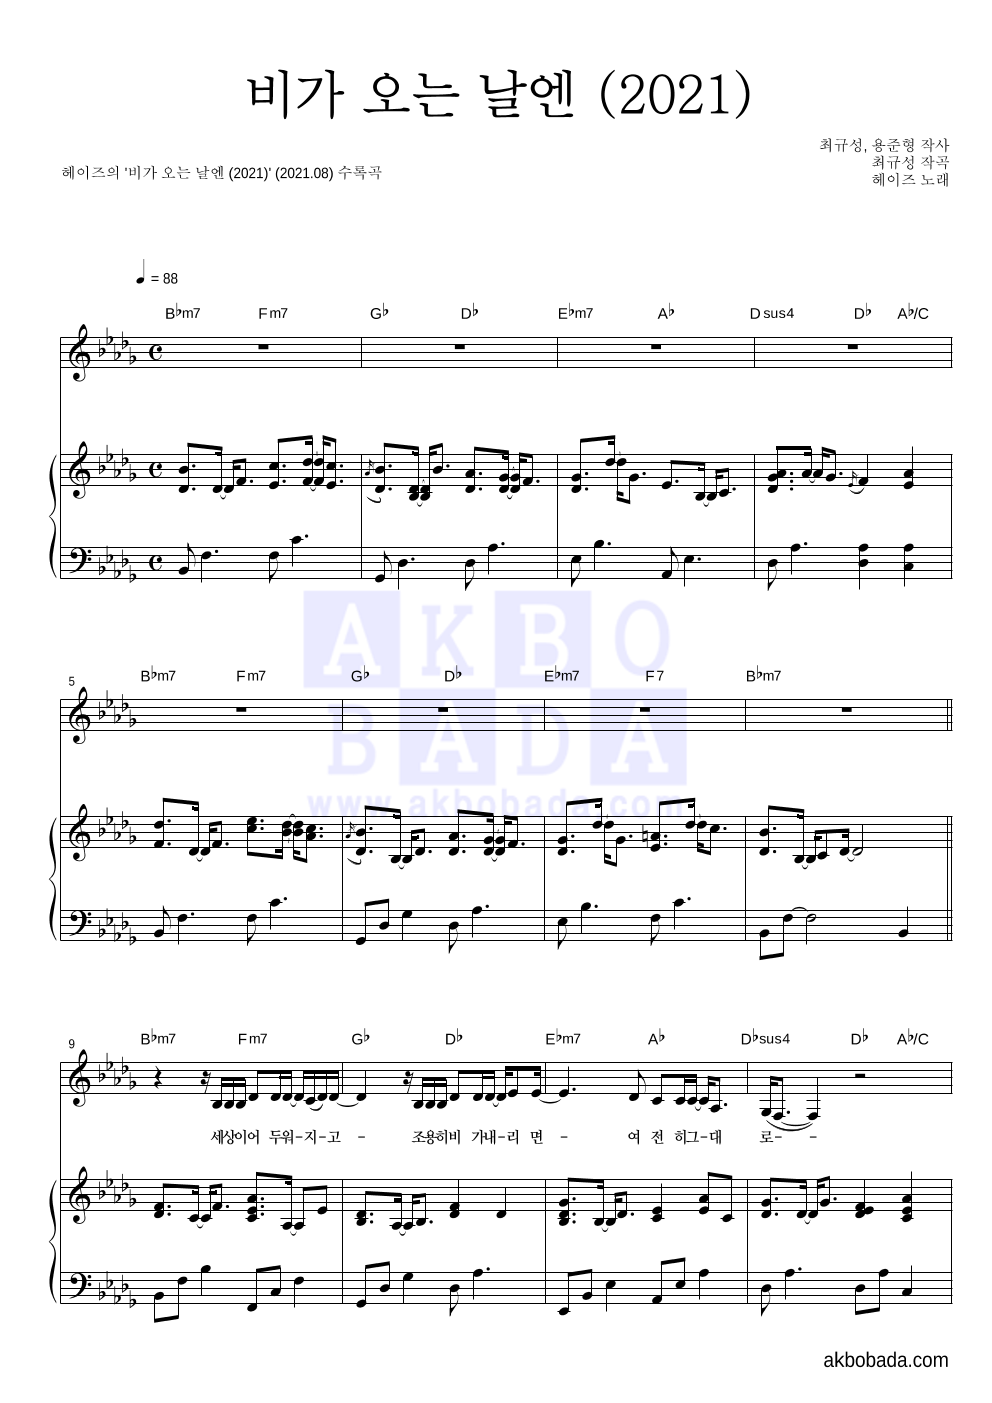 헤이즈 - 비가 오는 날엔 (2021) 피아노 3단 악보 